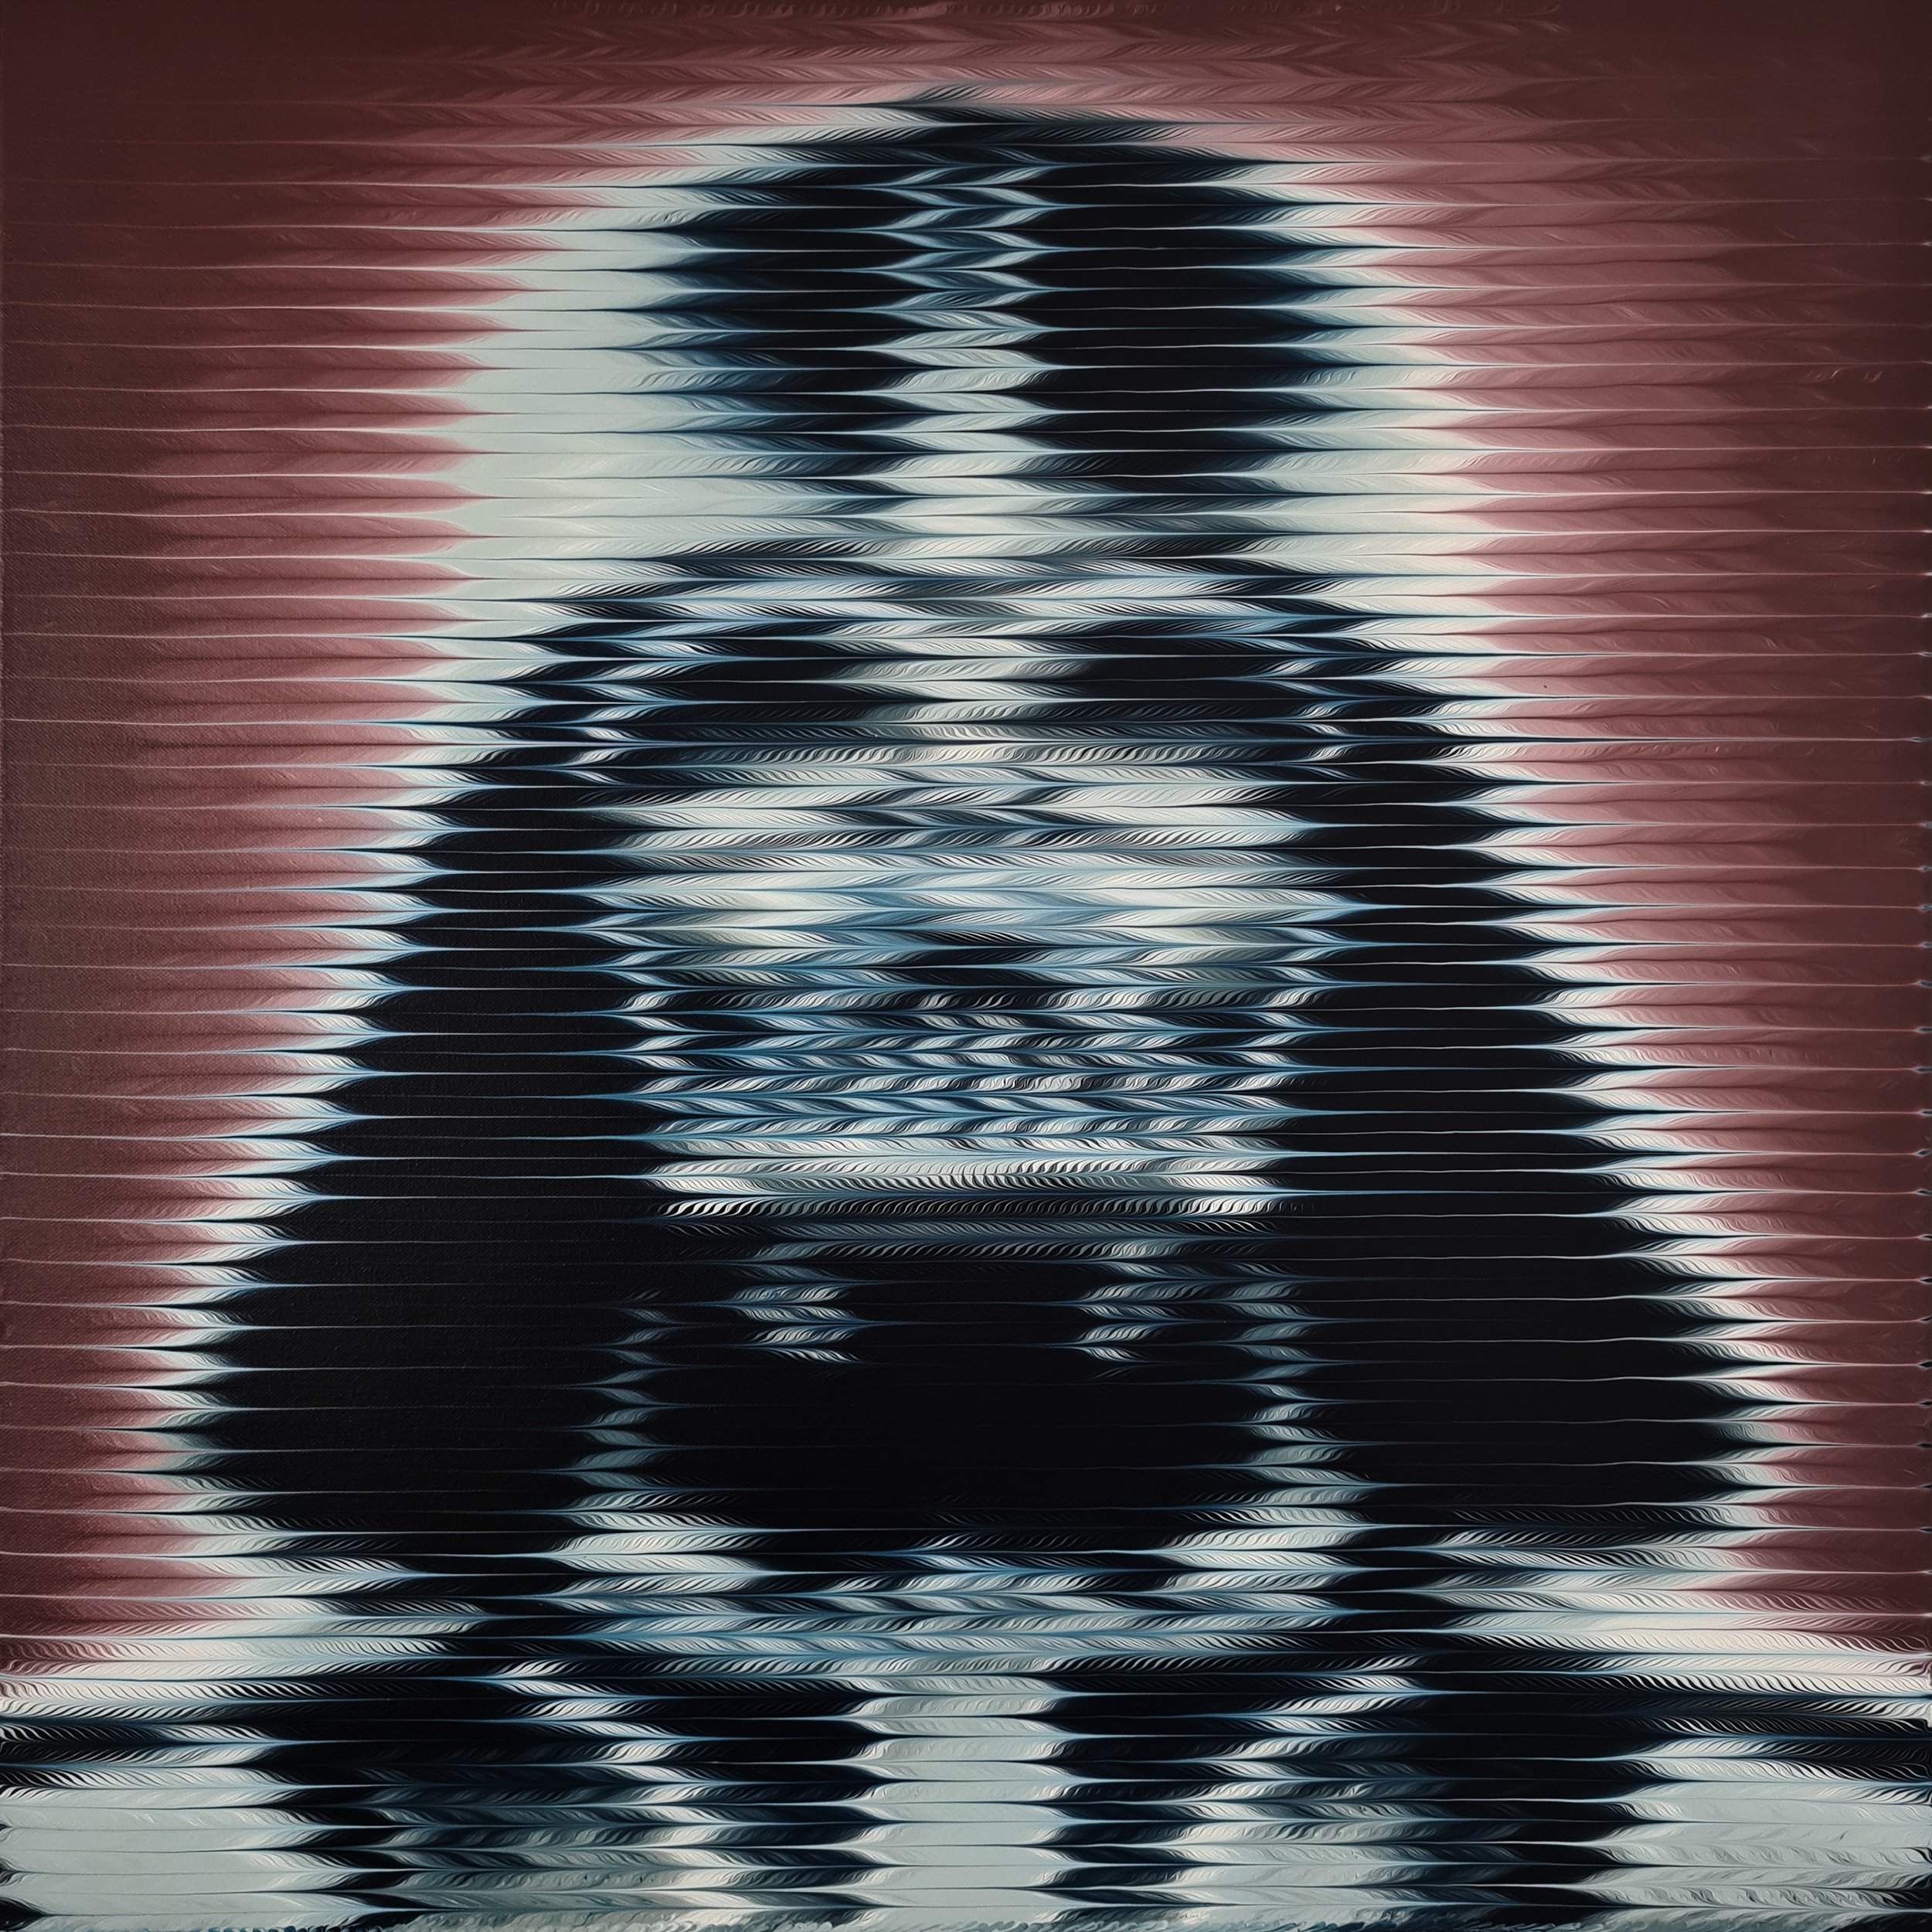 Vader 1977.jpg